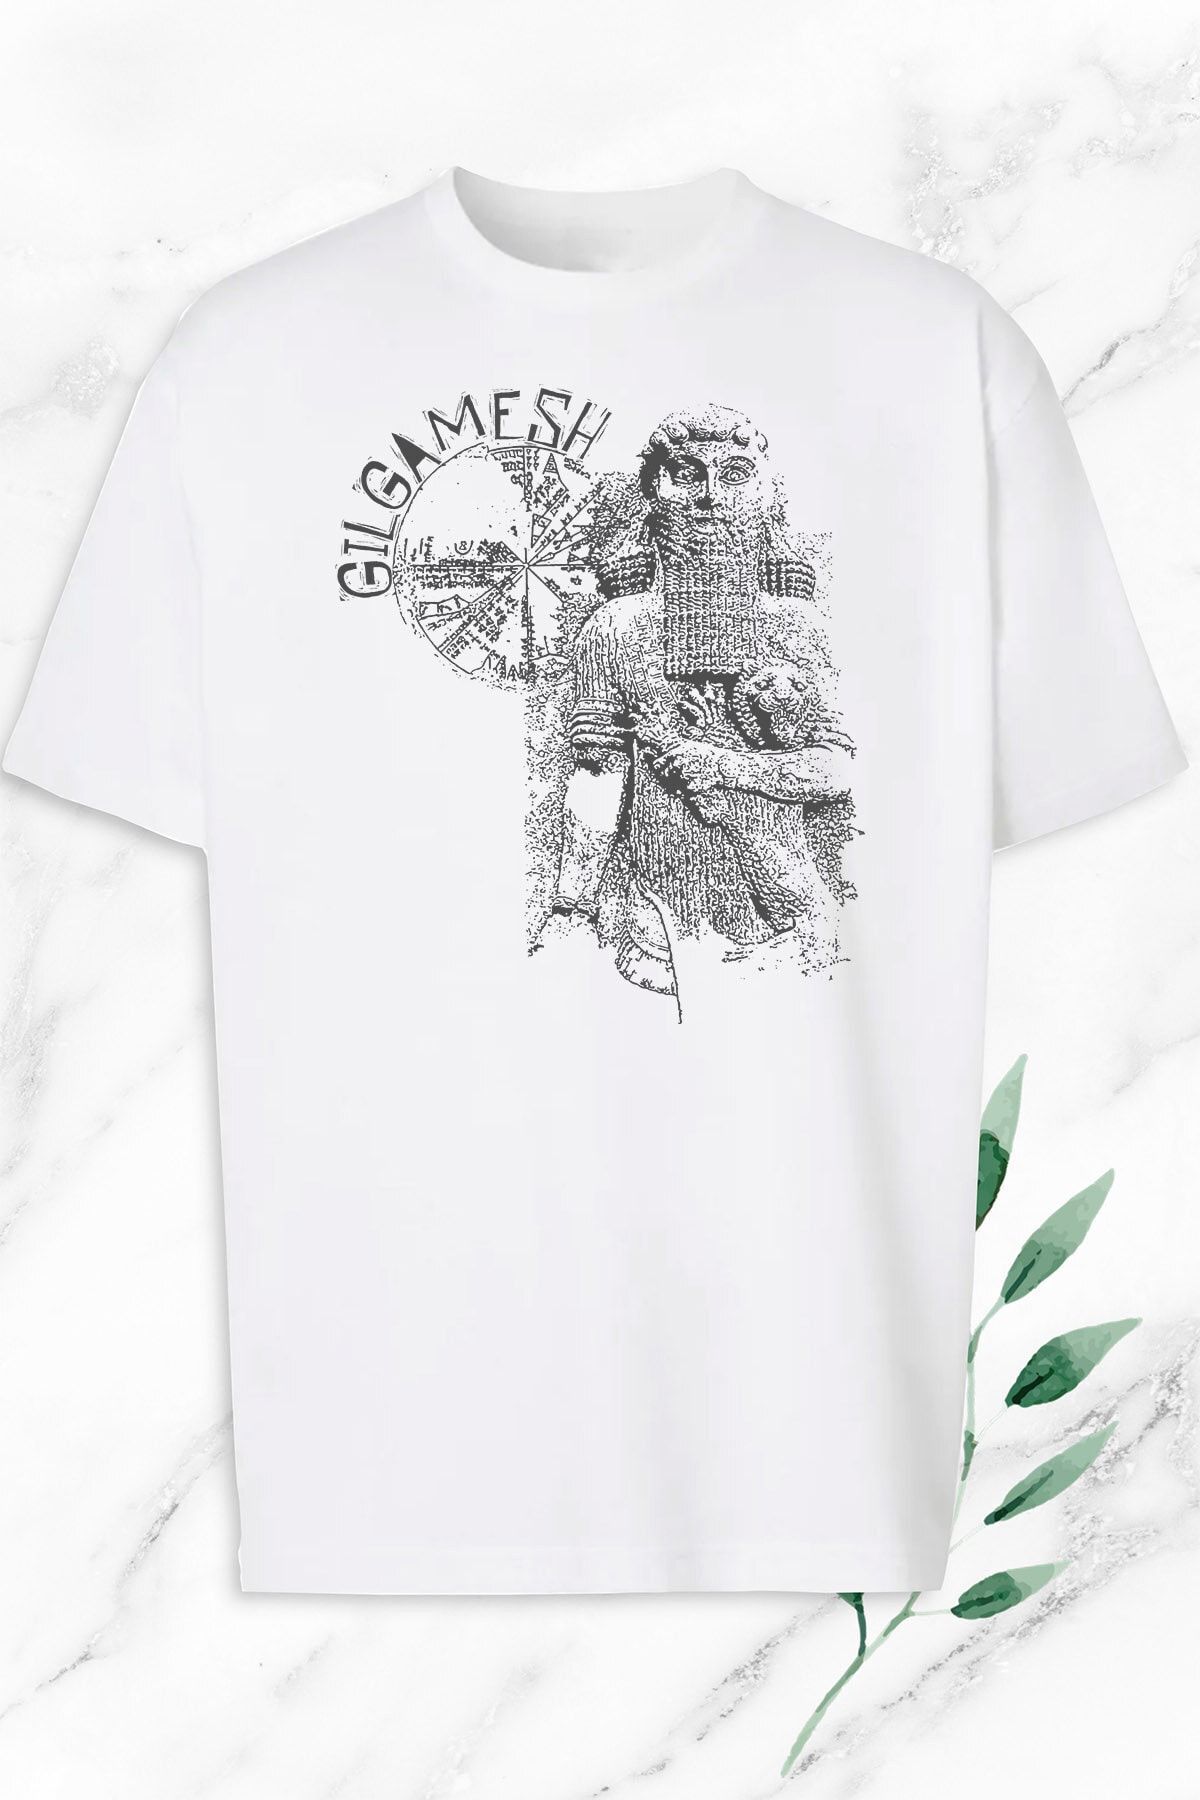 perseusshopping Unisex Beyaz Oversize Mitoloji Mezepotamya Gılgamış Heykel Baskılı Tişört